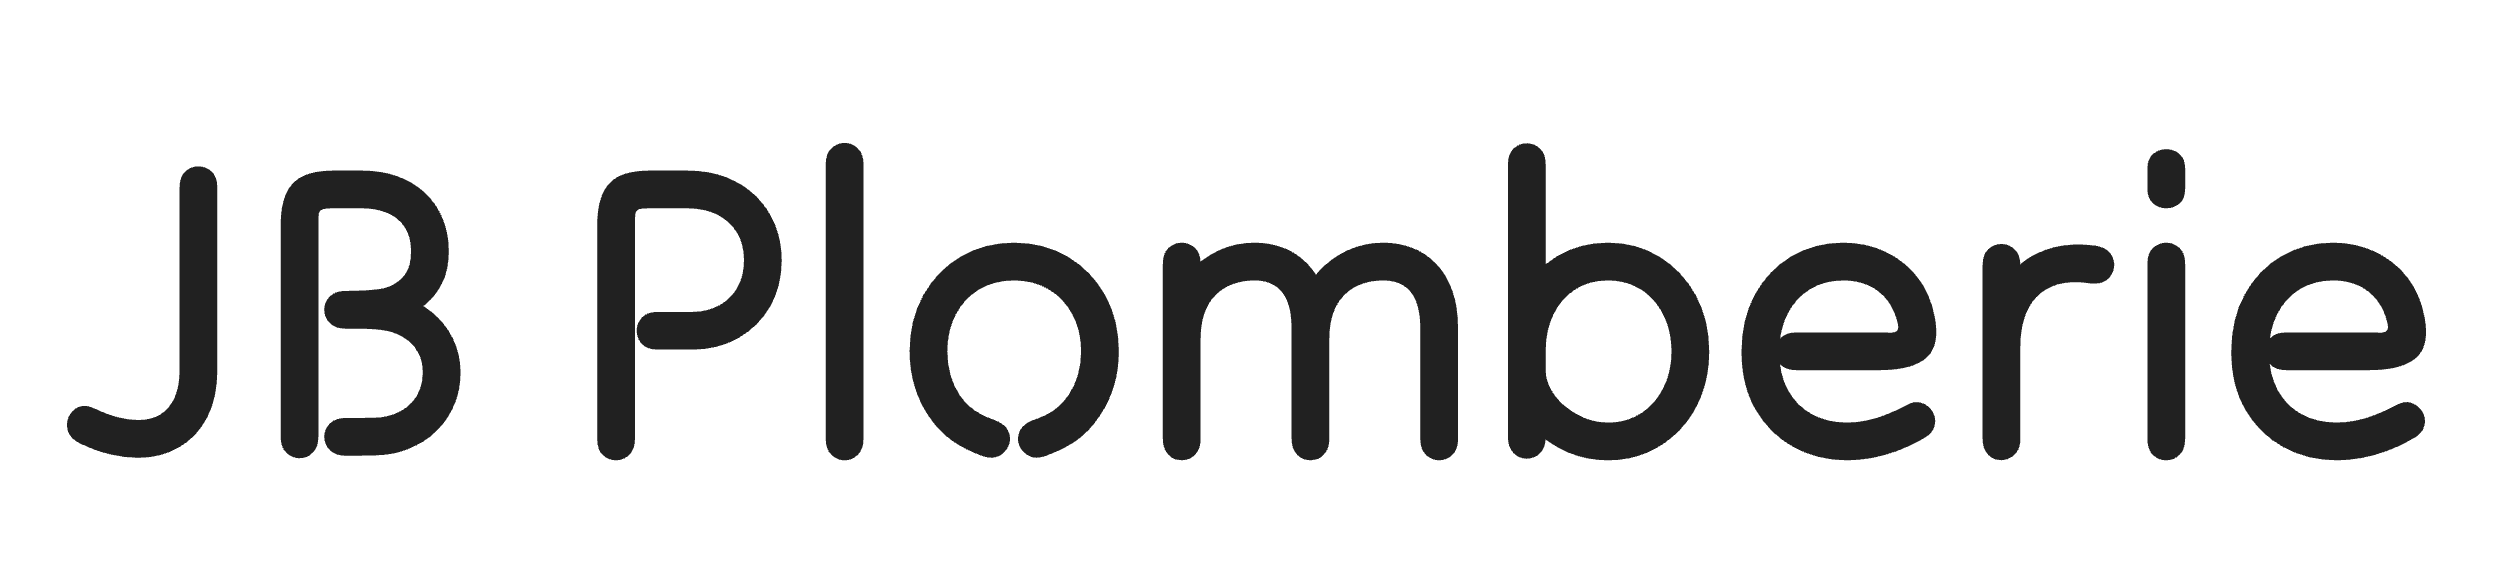 Un exemple de logo pour un site internet de plombier.